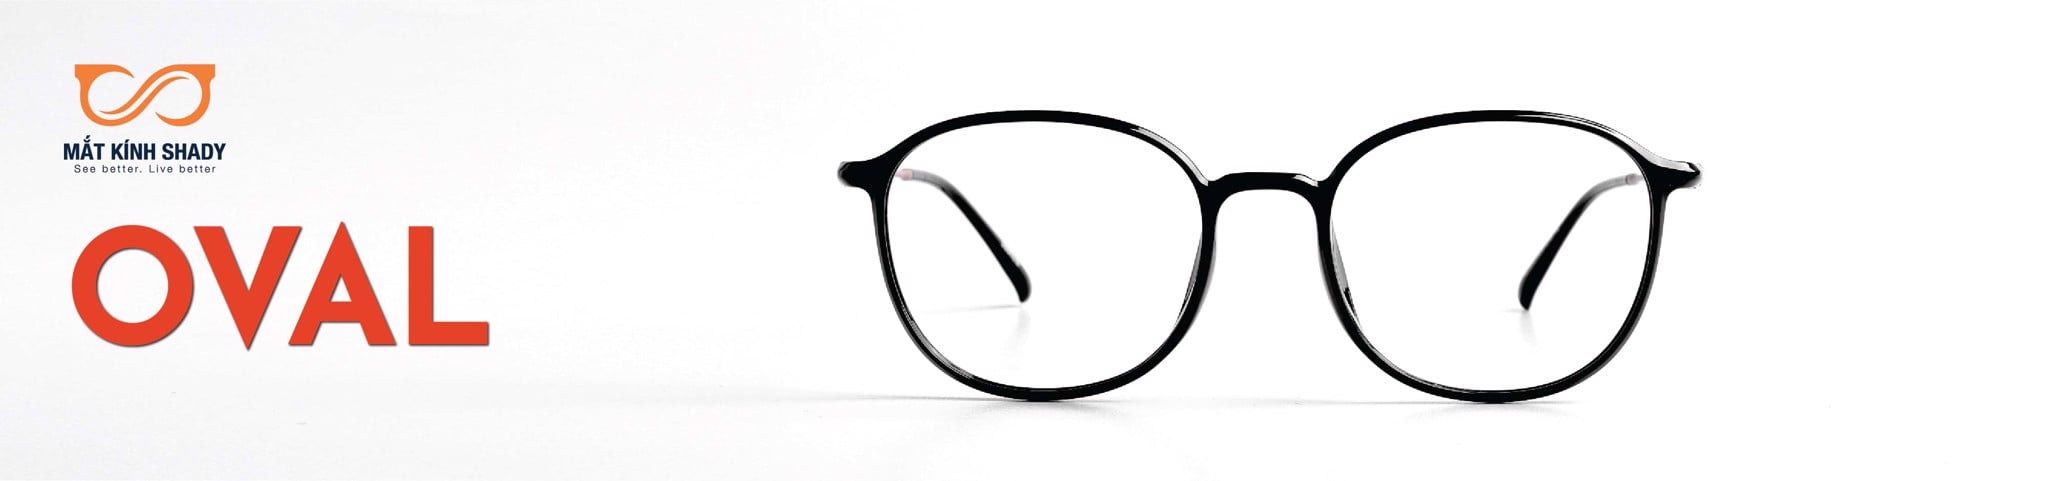 Làm thế nào để chọn kính cận hình oval phù hợp với phong cách cá nhân?
